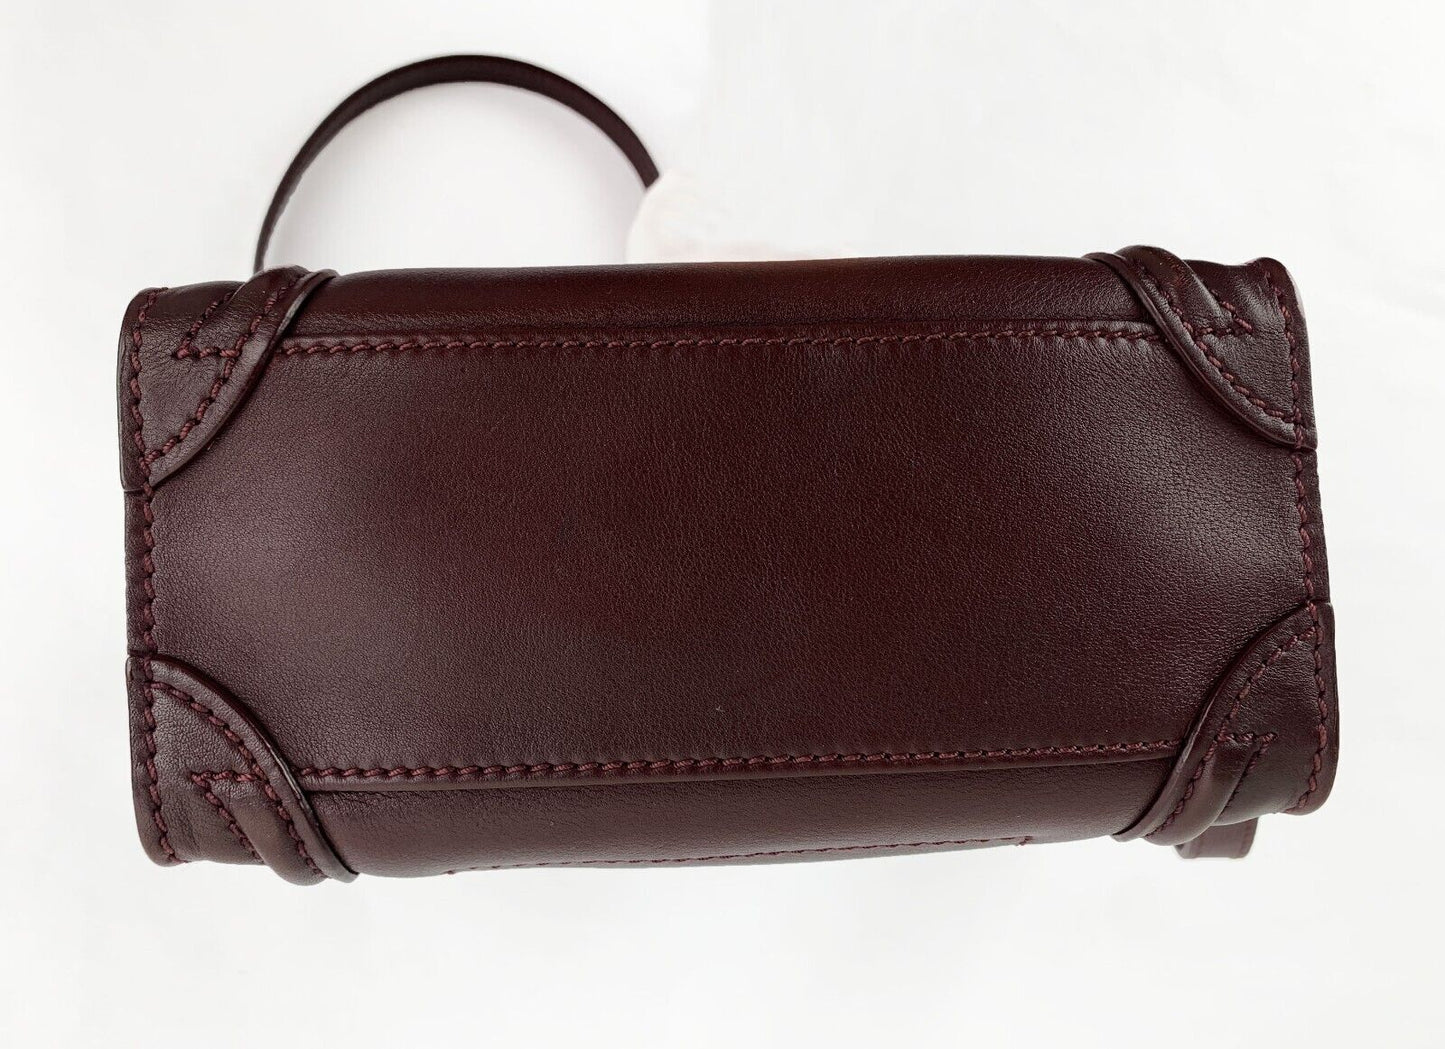 CELINE NANO LUGGAGE BAG Tote Handbag Burgundy Red Shoulder Bag